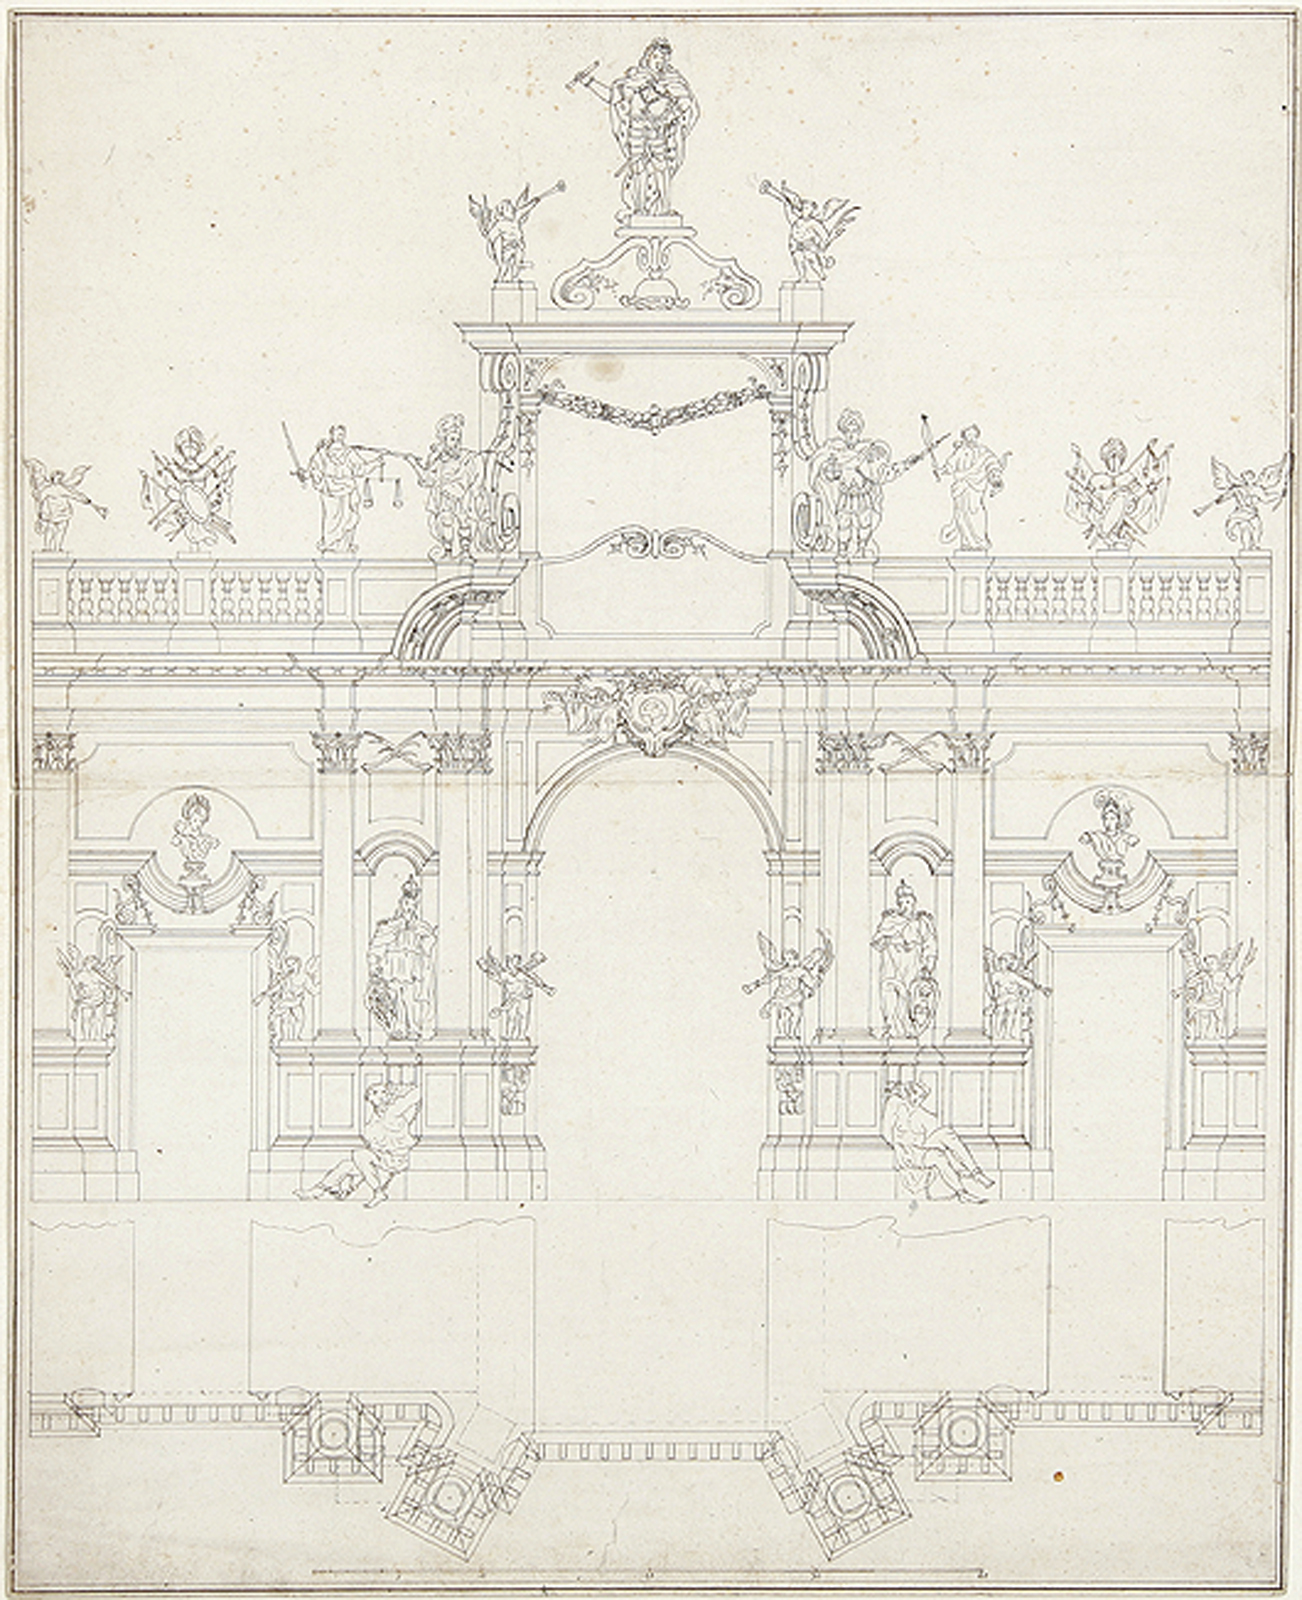 Architekturentwürfe für einen Altar und ein mit Statuen geschmücktes Portal.